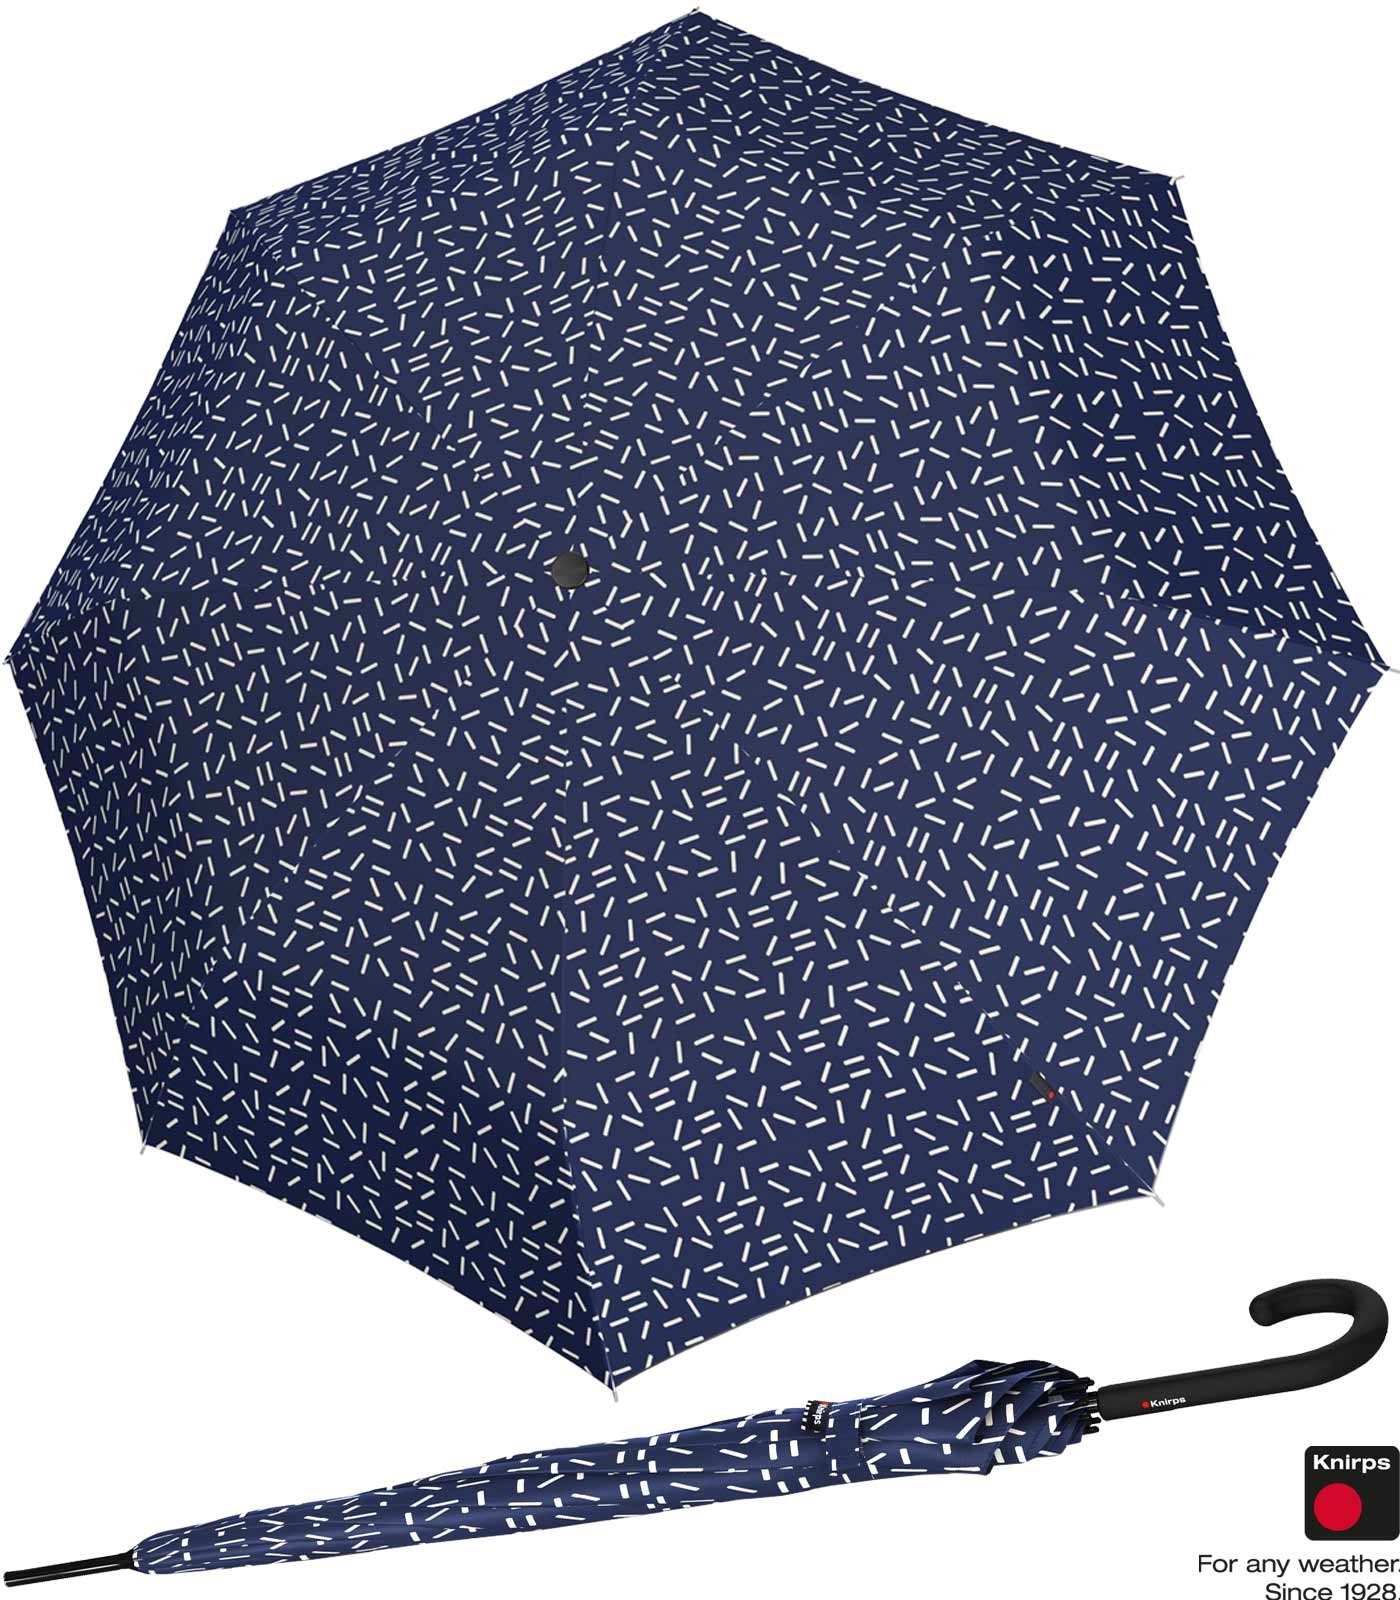 Knirps® Langregenschirm Damen A.760 Auf-Automatik - 2Dance, groß und stabil blau